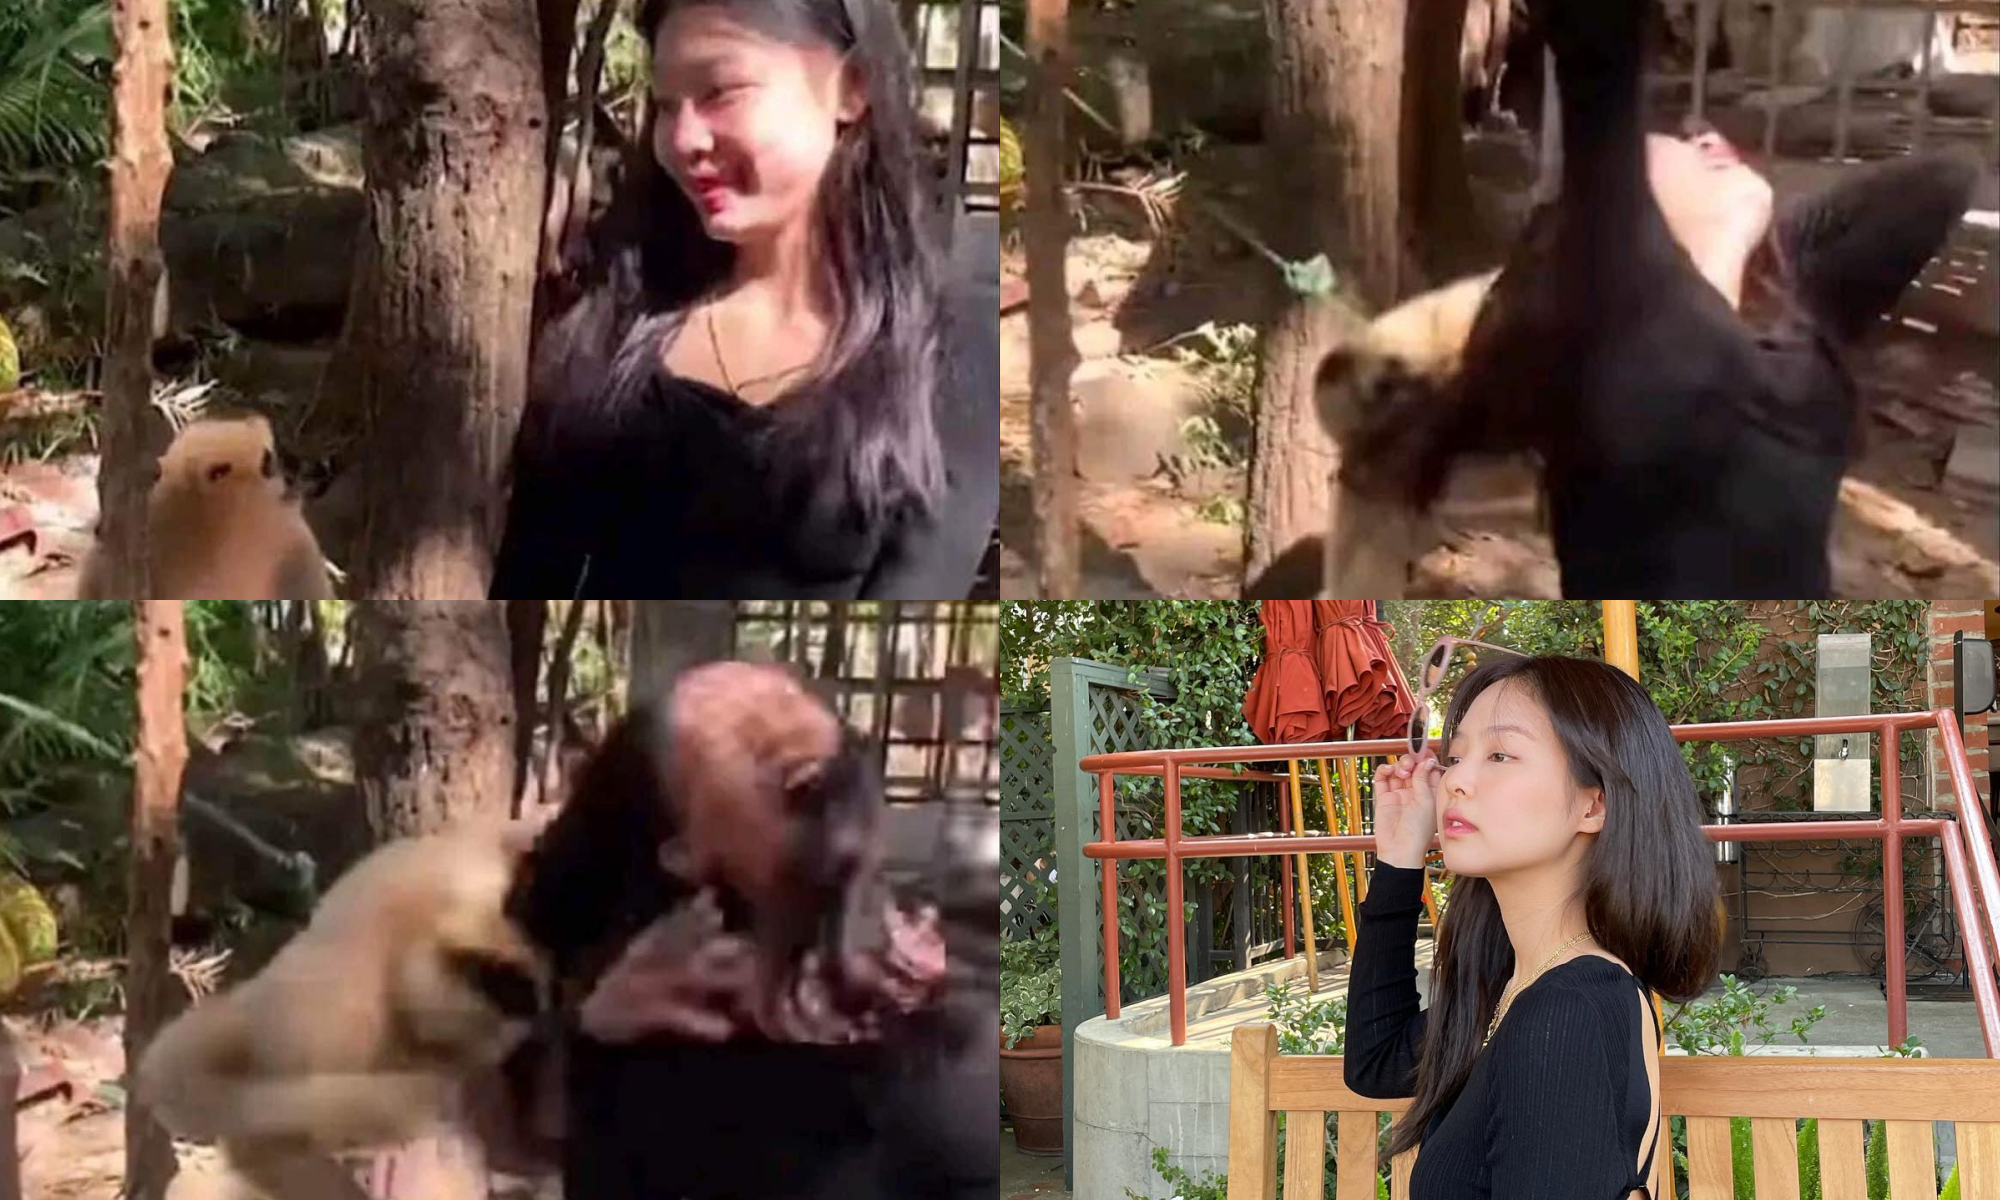 Hot rần rần ảnh Jennie (BLACKPINK) đi sở thú rồi bị khỉ... giật tóc, nhìn kĩ thấy hình như có gì sai sai - Ảnh 2.